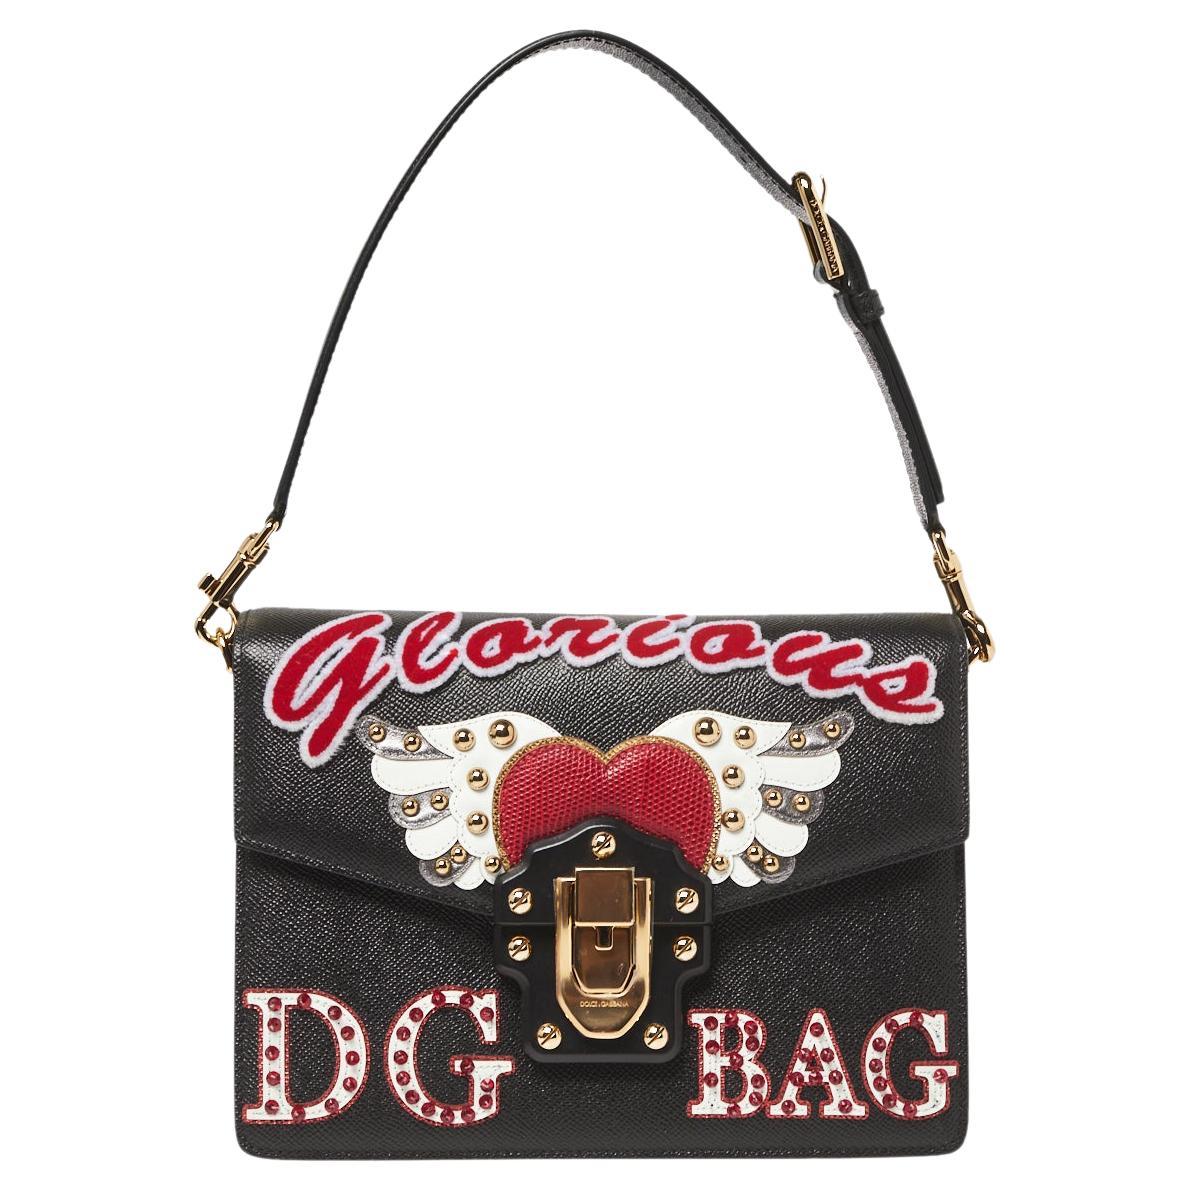 Dolce & Gabbana Black Leather Lucia Embellished Shoulder Bag